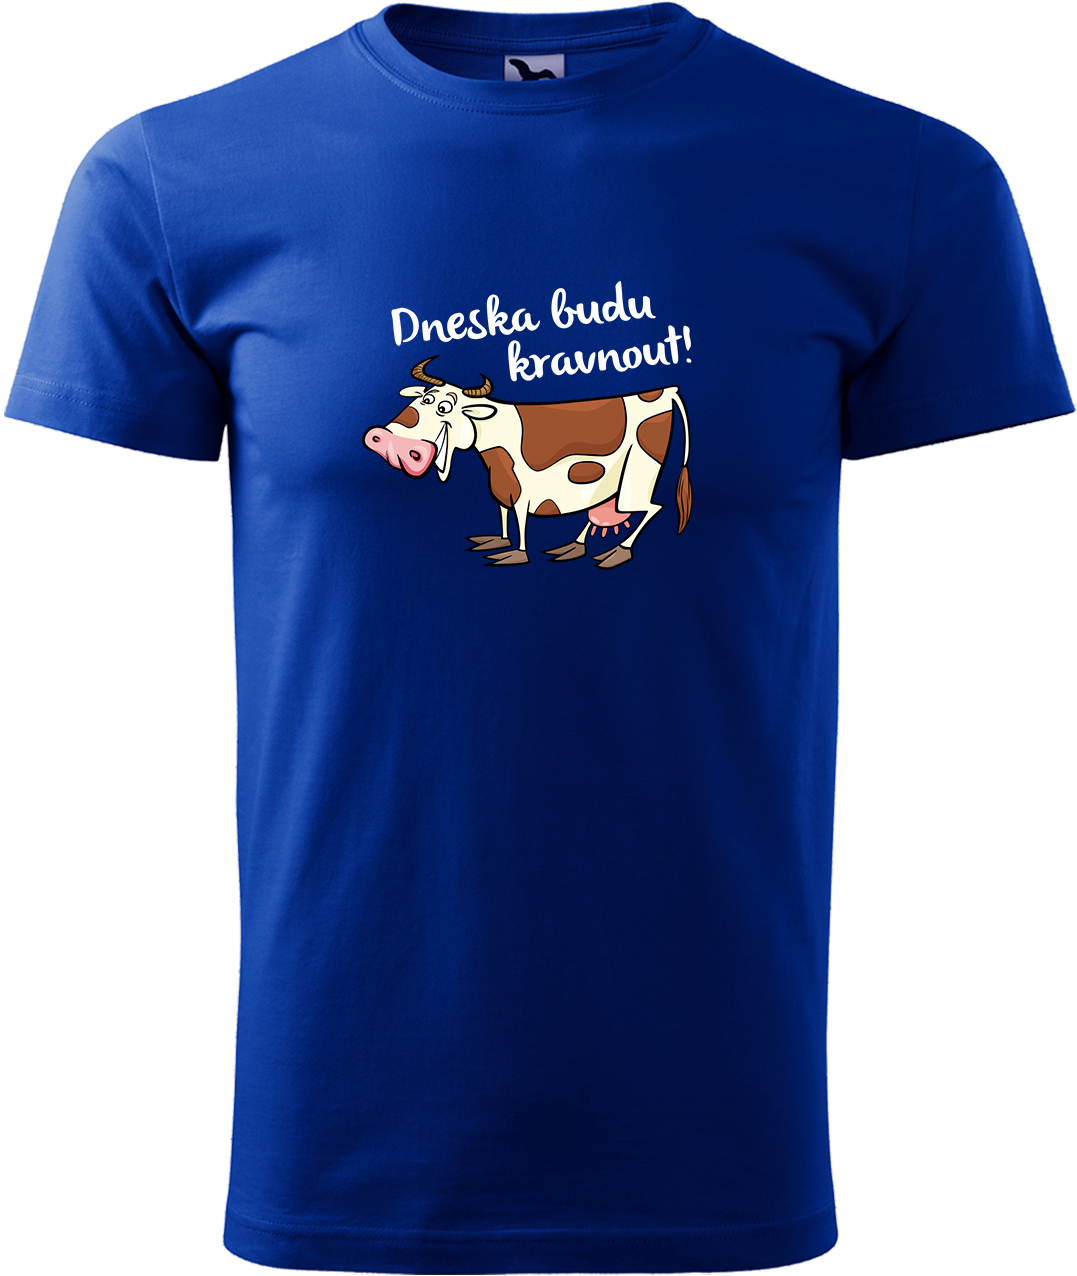 Pánské tričko s krávou - Dneska budu kravnout! Velikost: XL, Barva: Královská modrá (05), Střih: pánský